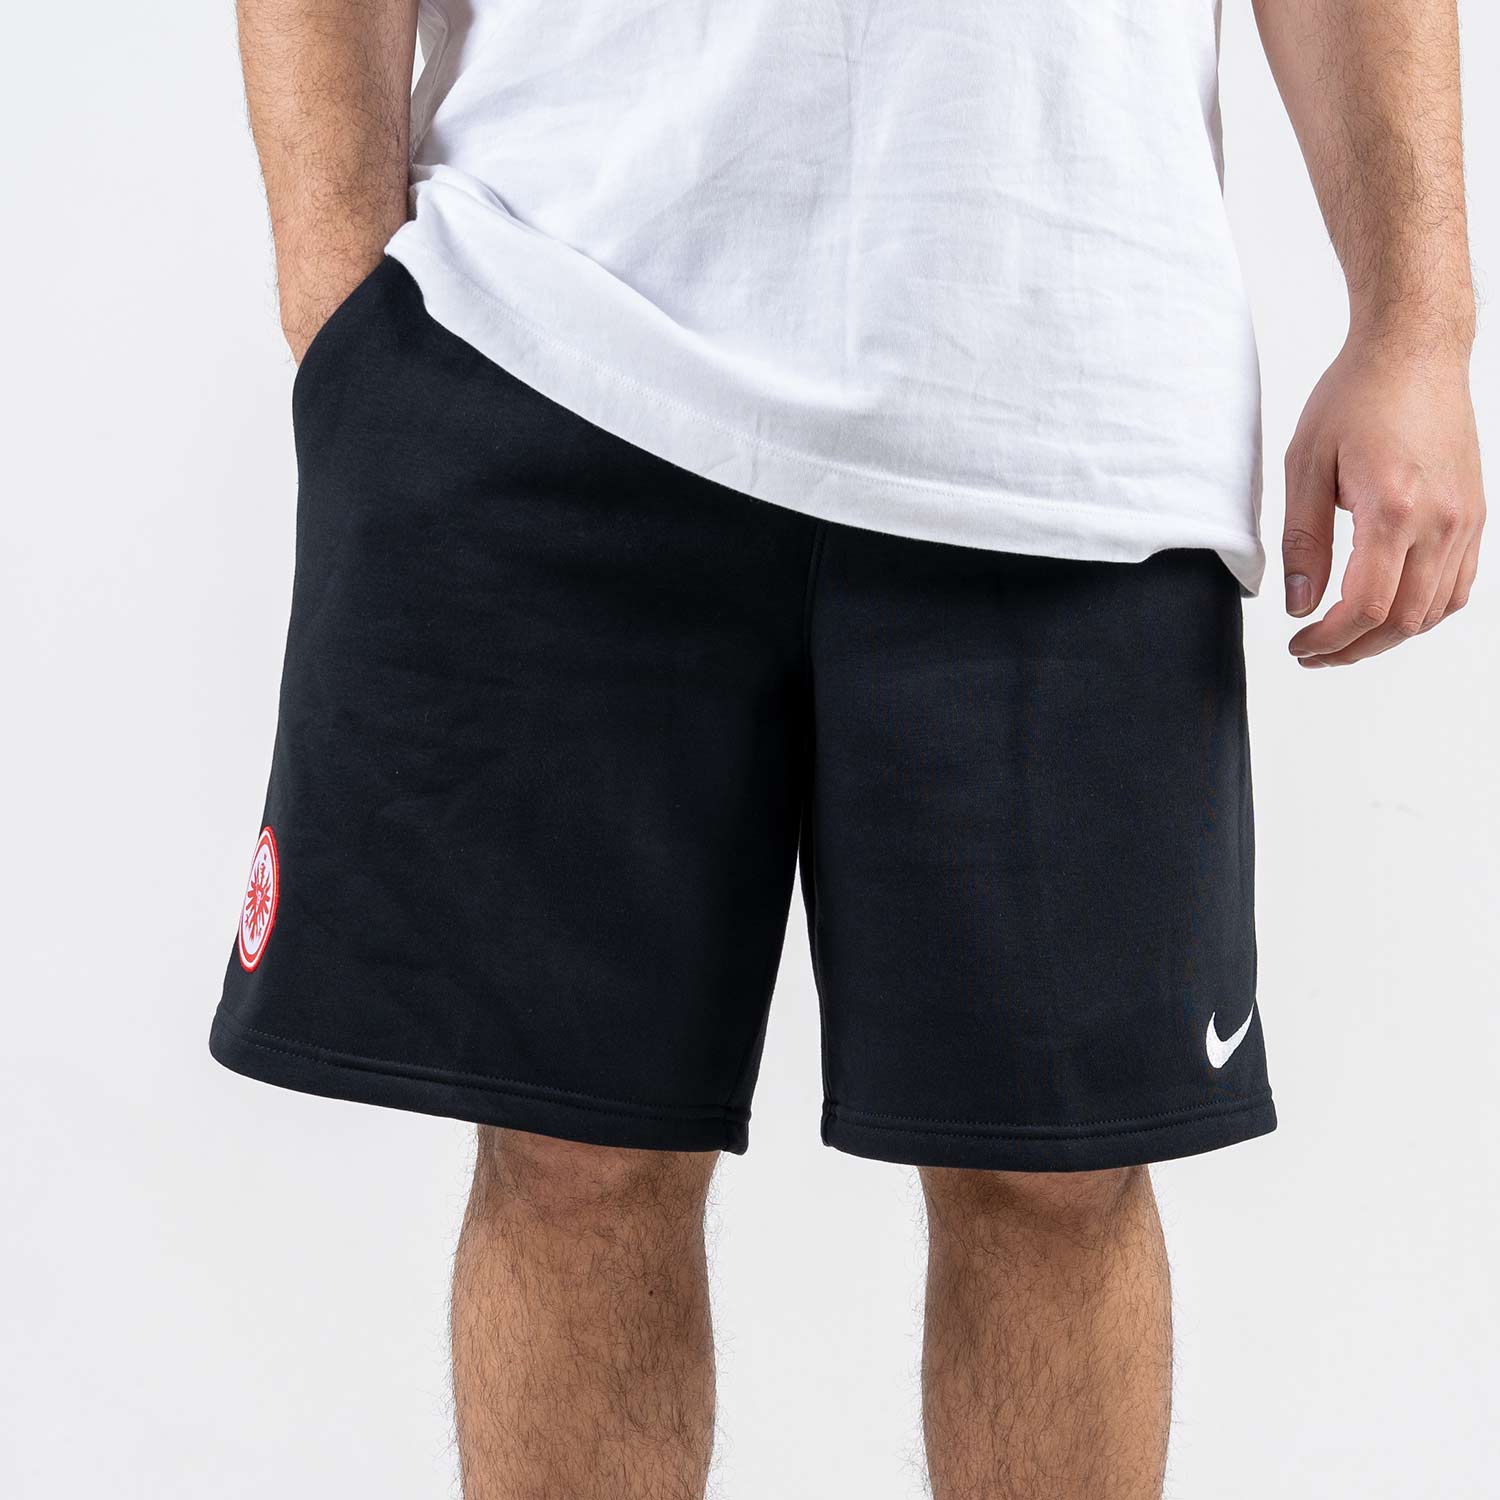 Bild 4: Nike Hose kurz Basic schwarz